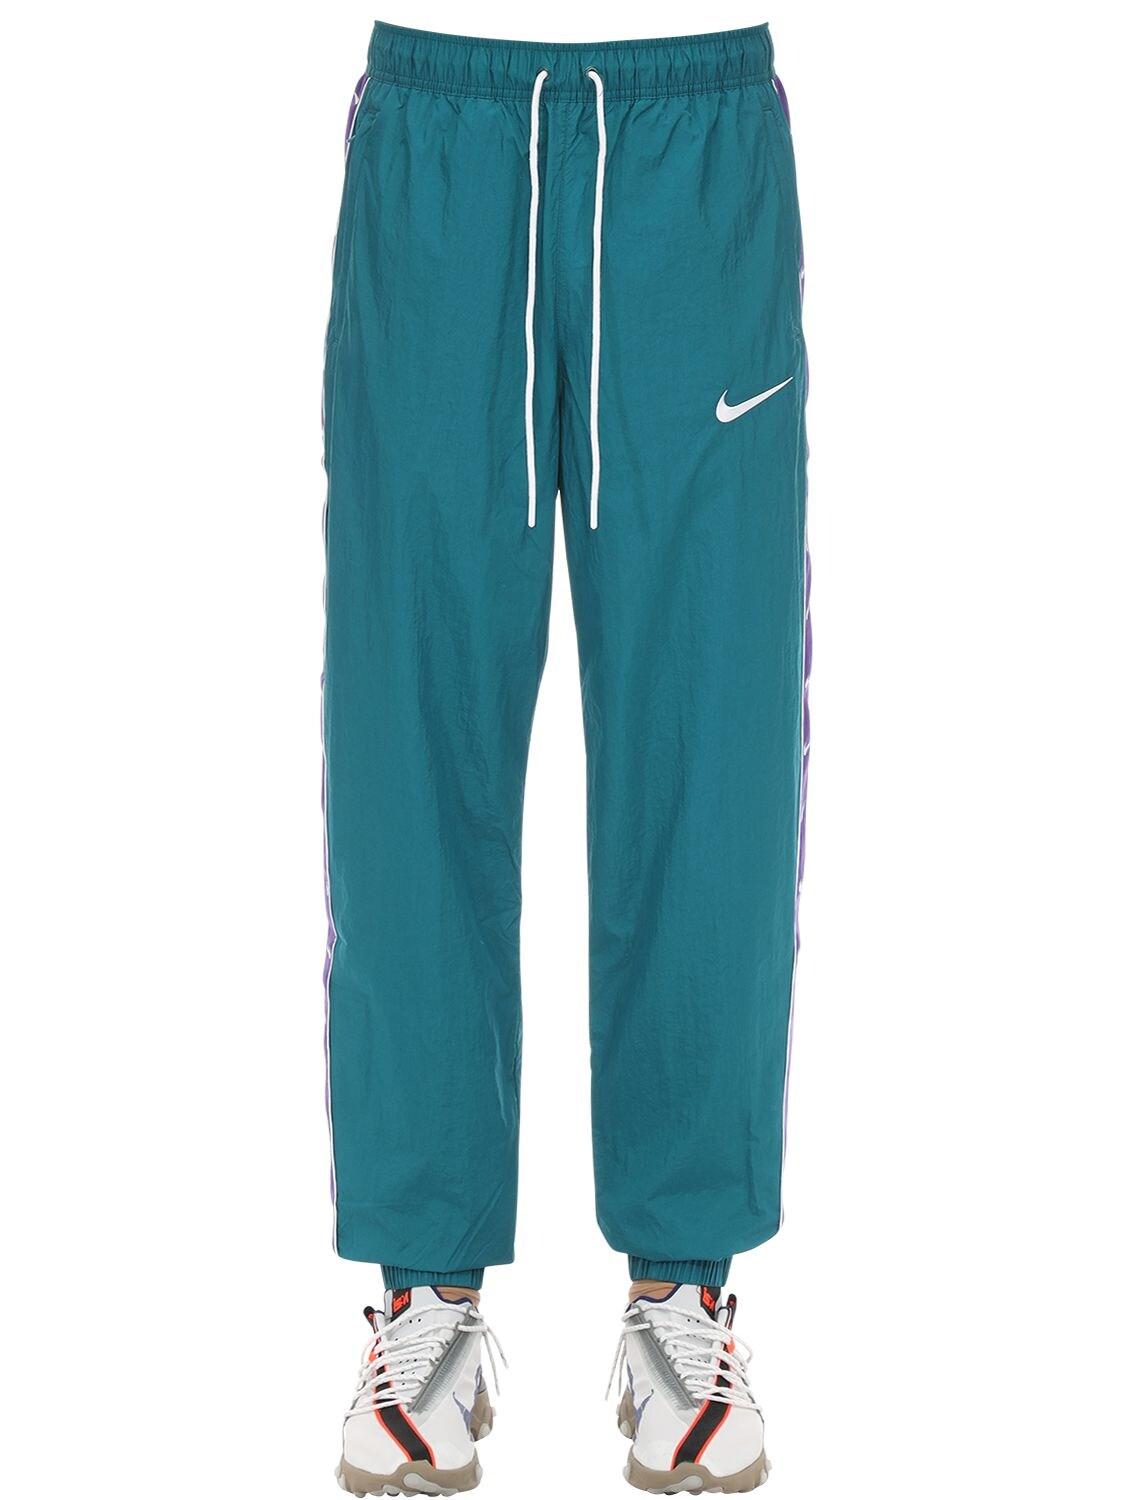 Nike Nsw Swoosh Woven Nylon Pants in Teal/Purple (Blue) for Men - Lyst